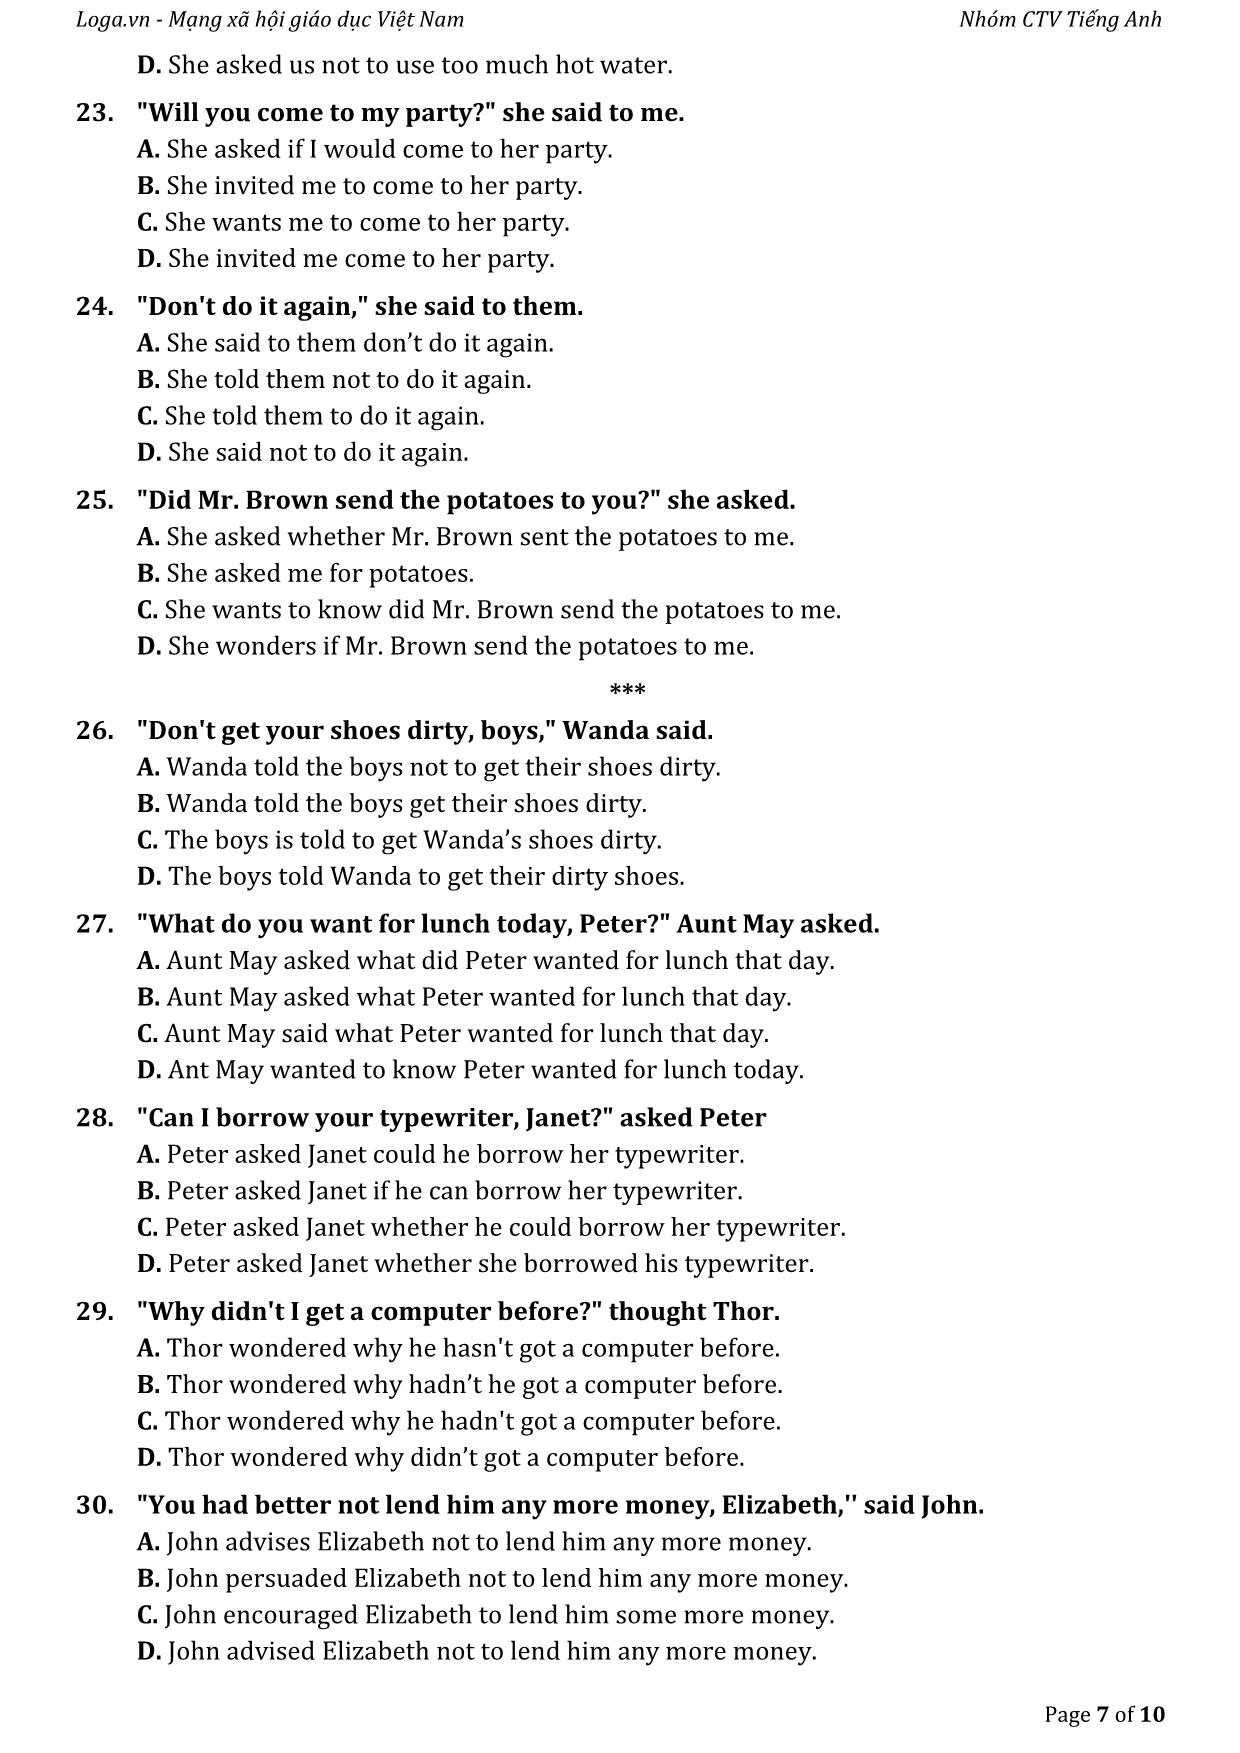 Bài tập tự luyện câu gián tiếp trong tiếng Anh trang 7